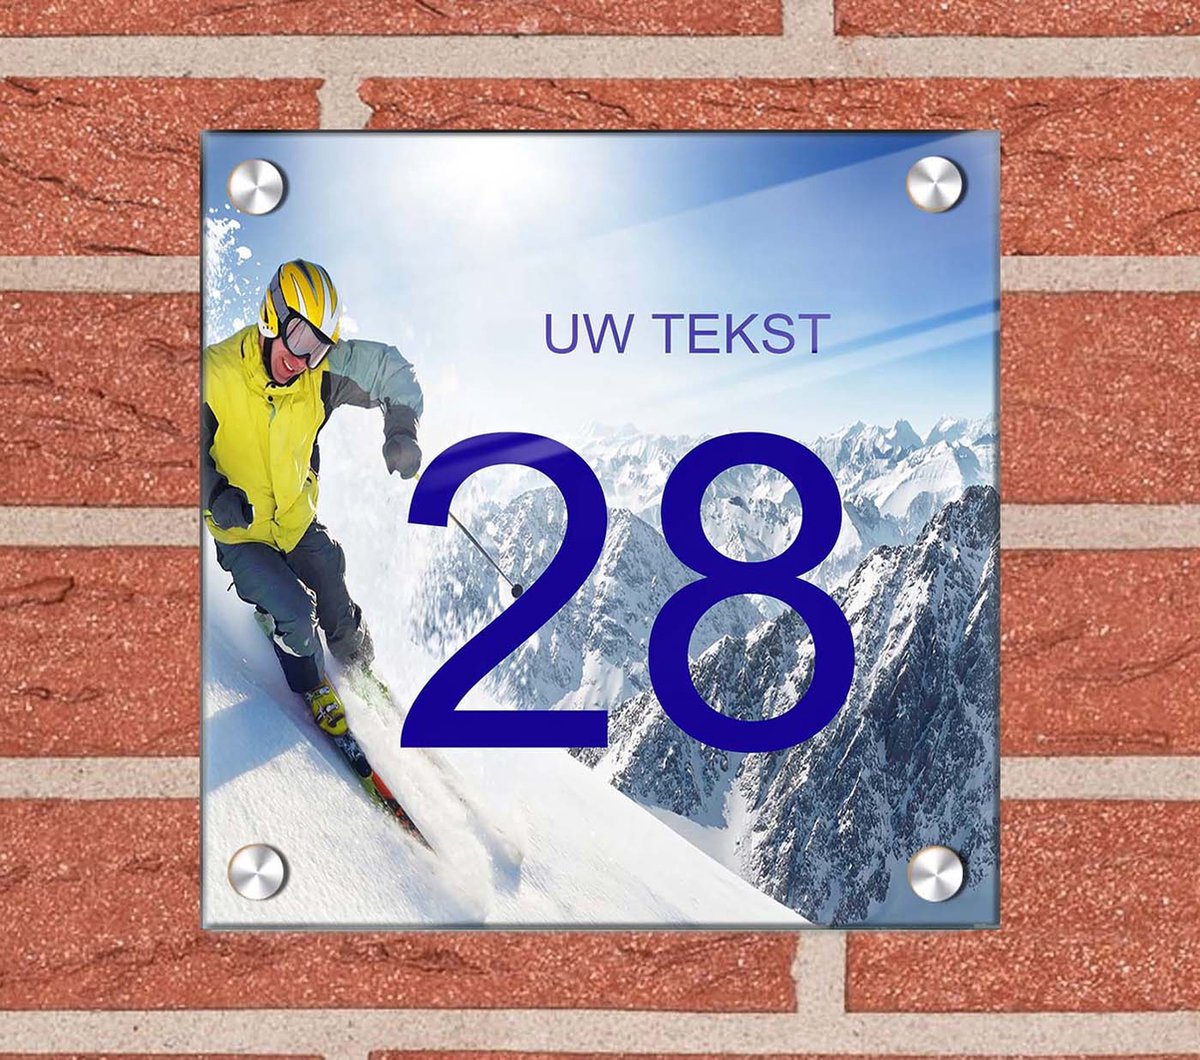 Huisnummer naambord plexiglas20x20x0,5cm Wintersport Ski design - met naam bedrukken Huisnummerbordjes, Naambordje voordeur, naamplaatje voordeur, huisnummer bord, huisnummer borden